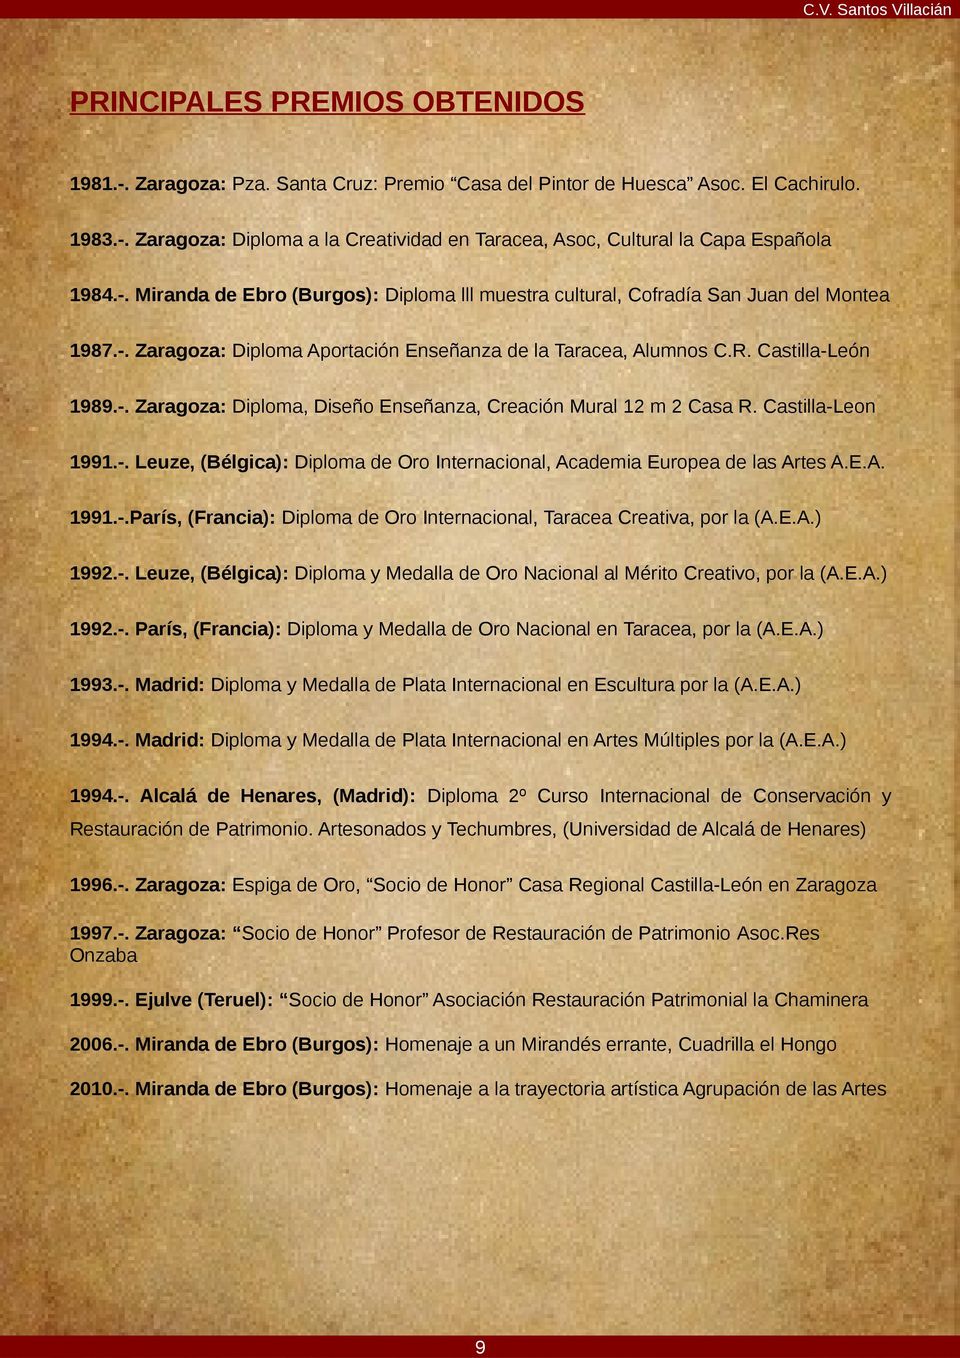 Castilla-Leon 1991.-. Leuze, (Bélgica): Diploma de Oro Internacional, Academia Europea de las Artes A.E.A. 1991.-.París, (Francia): Diploma de Oro Internacional, Taracea Creativa, por la (A.E.A.) 1992.